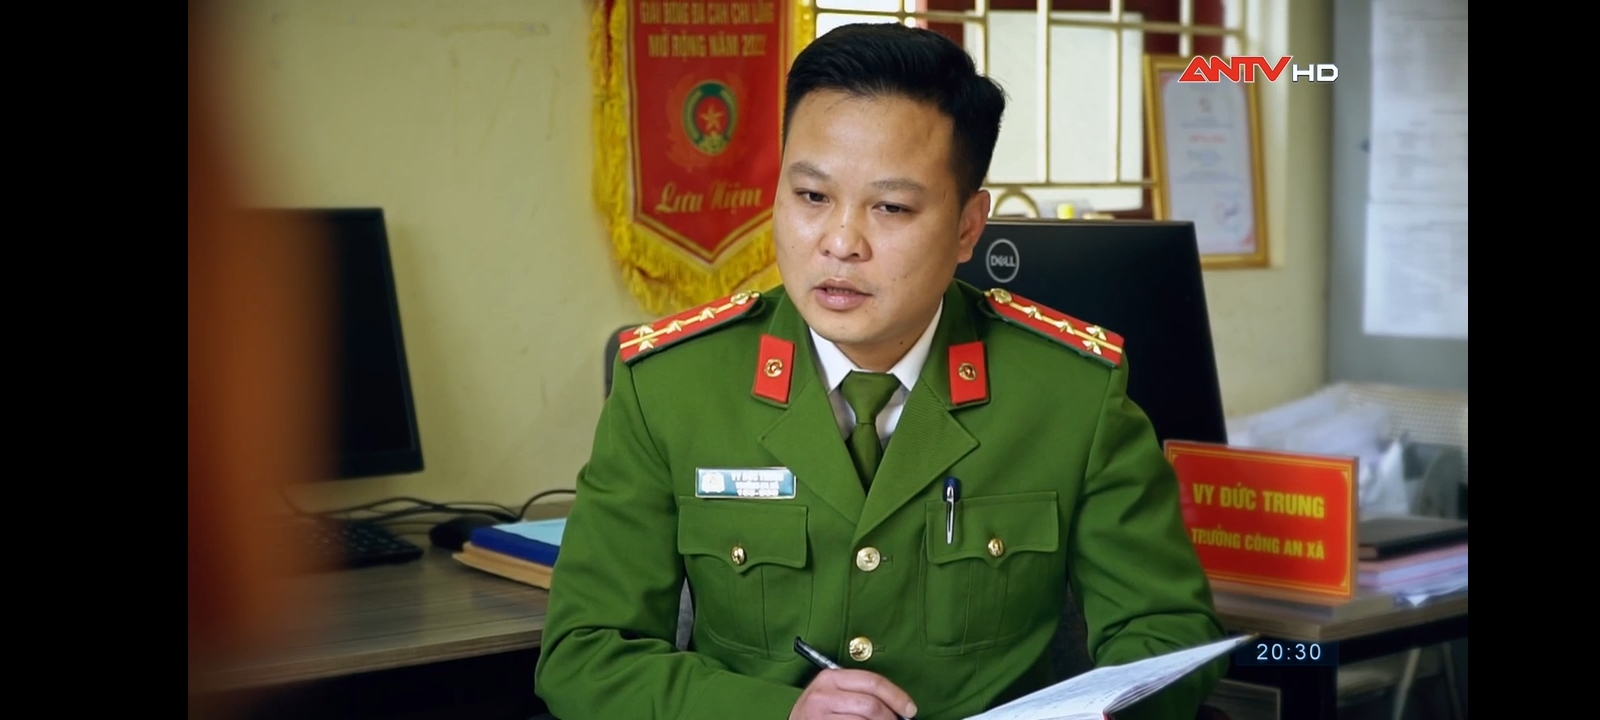 Đại úy Vy Đức Trung triển khai kế hoạch công việc công an xã Bằng Mạc